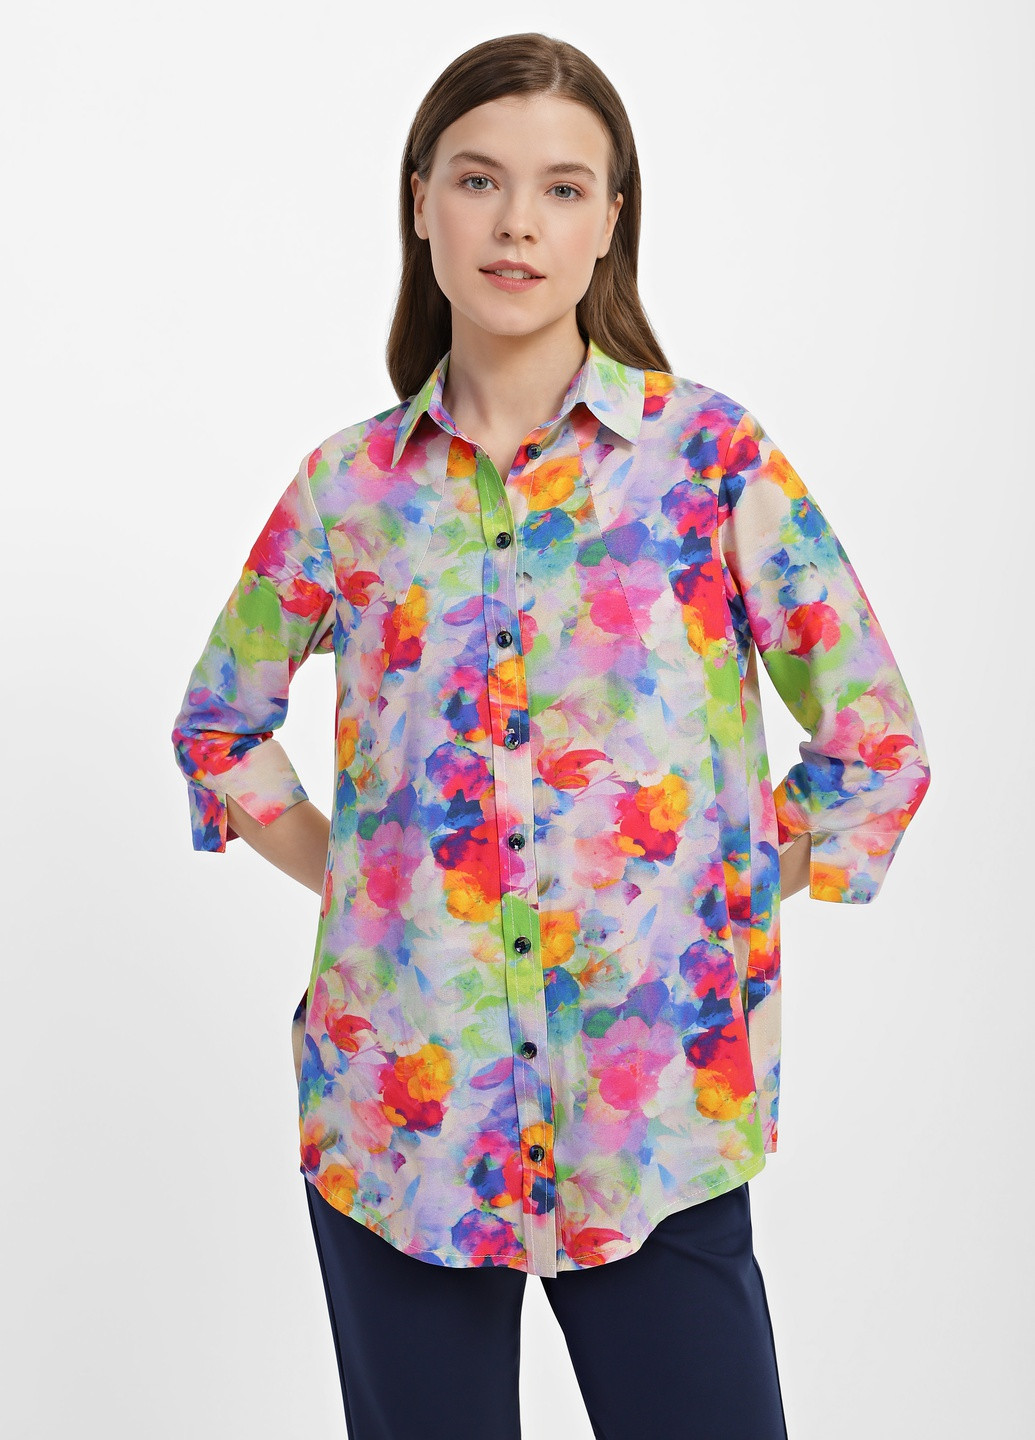 Комбинированная демисезонная блузка женская 1097-3 DANNA